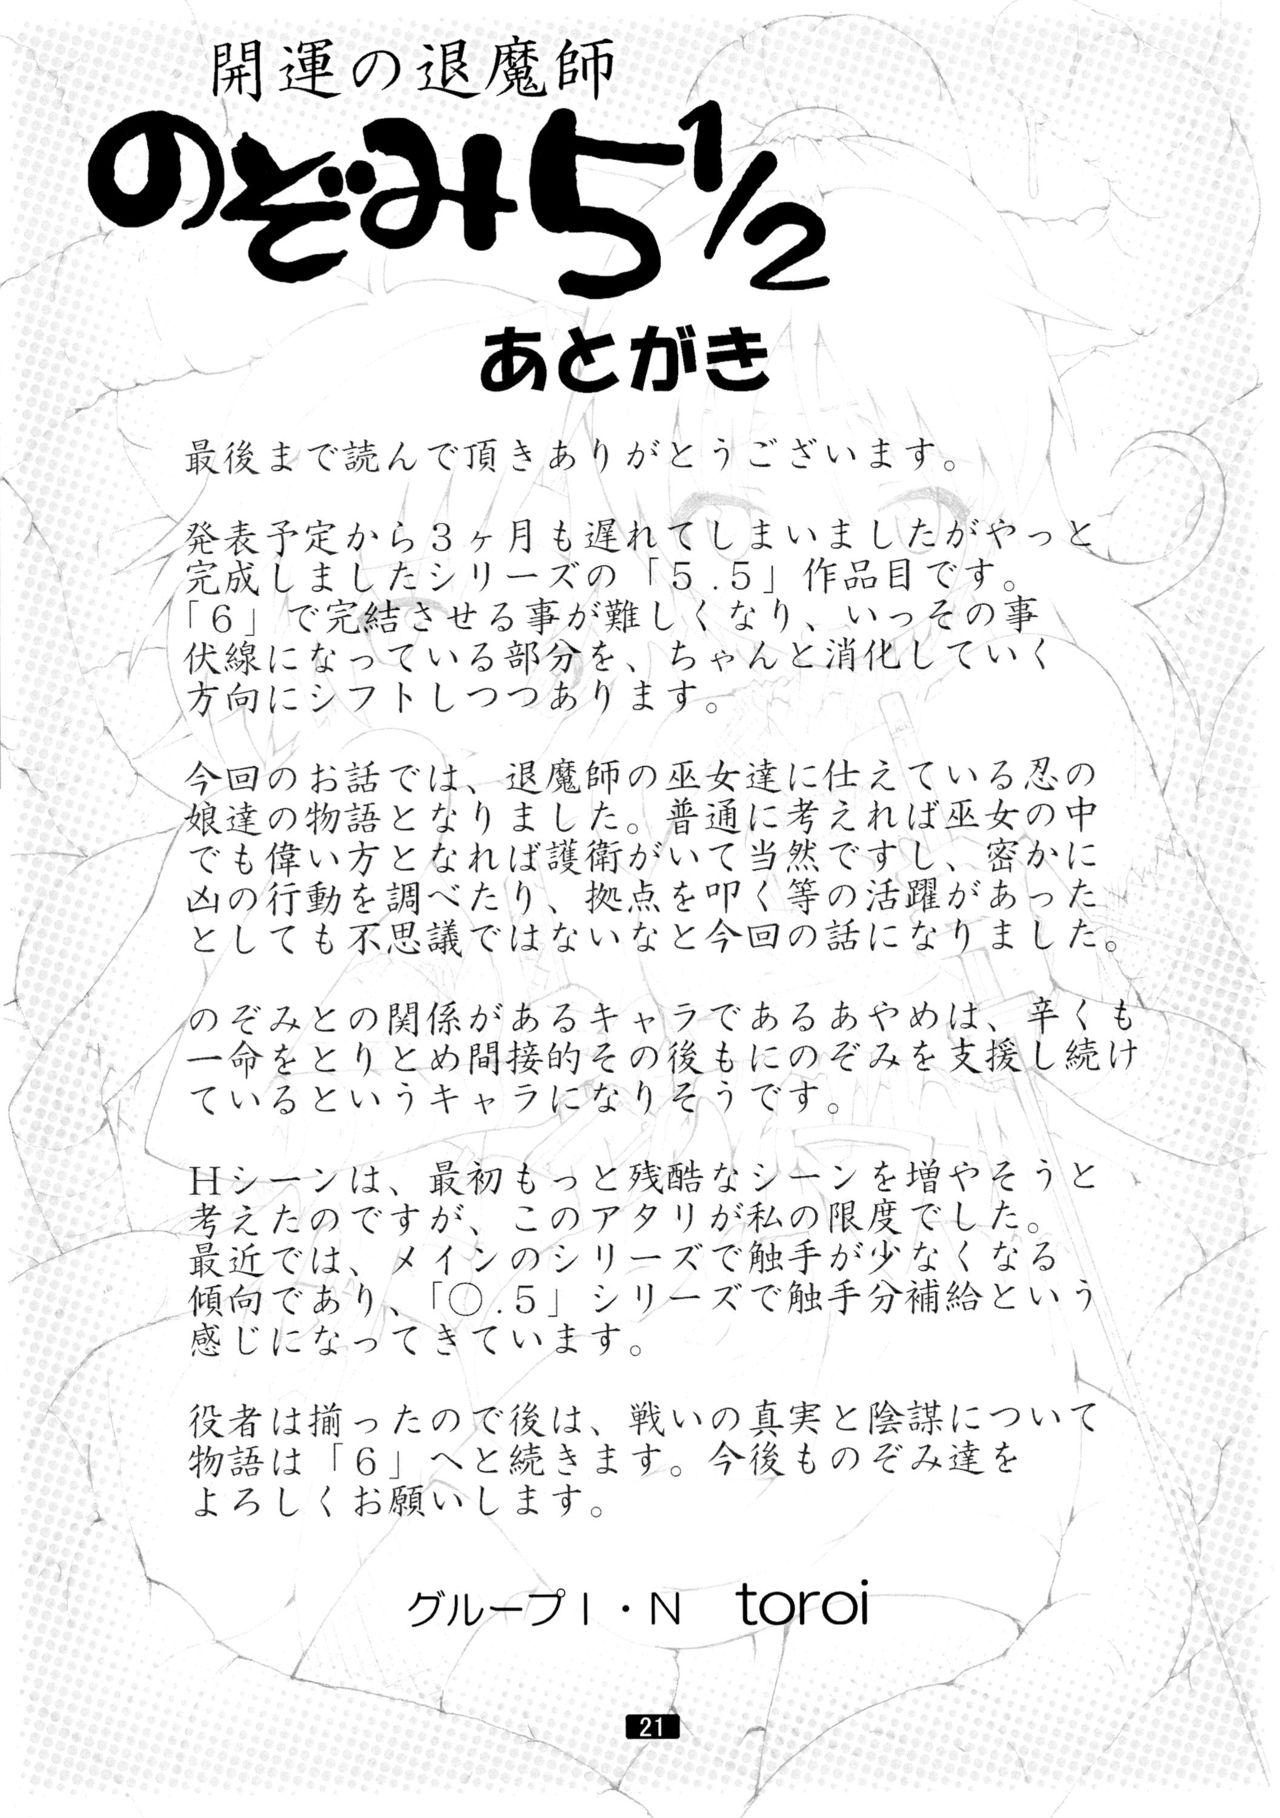 Anime Kaiun no Taimashi Nozomi 5 1/ 2 Highschool - Page 21